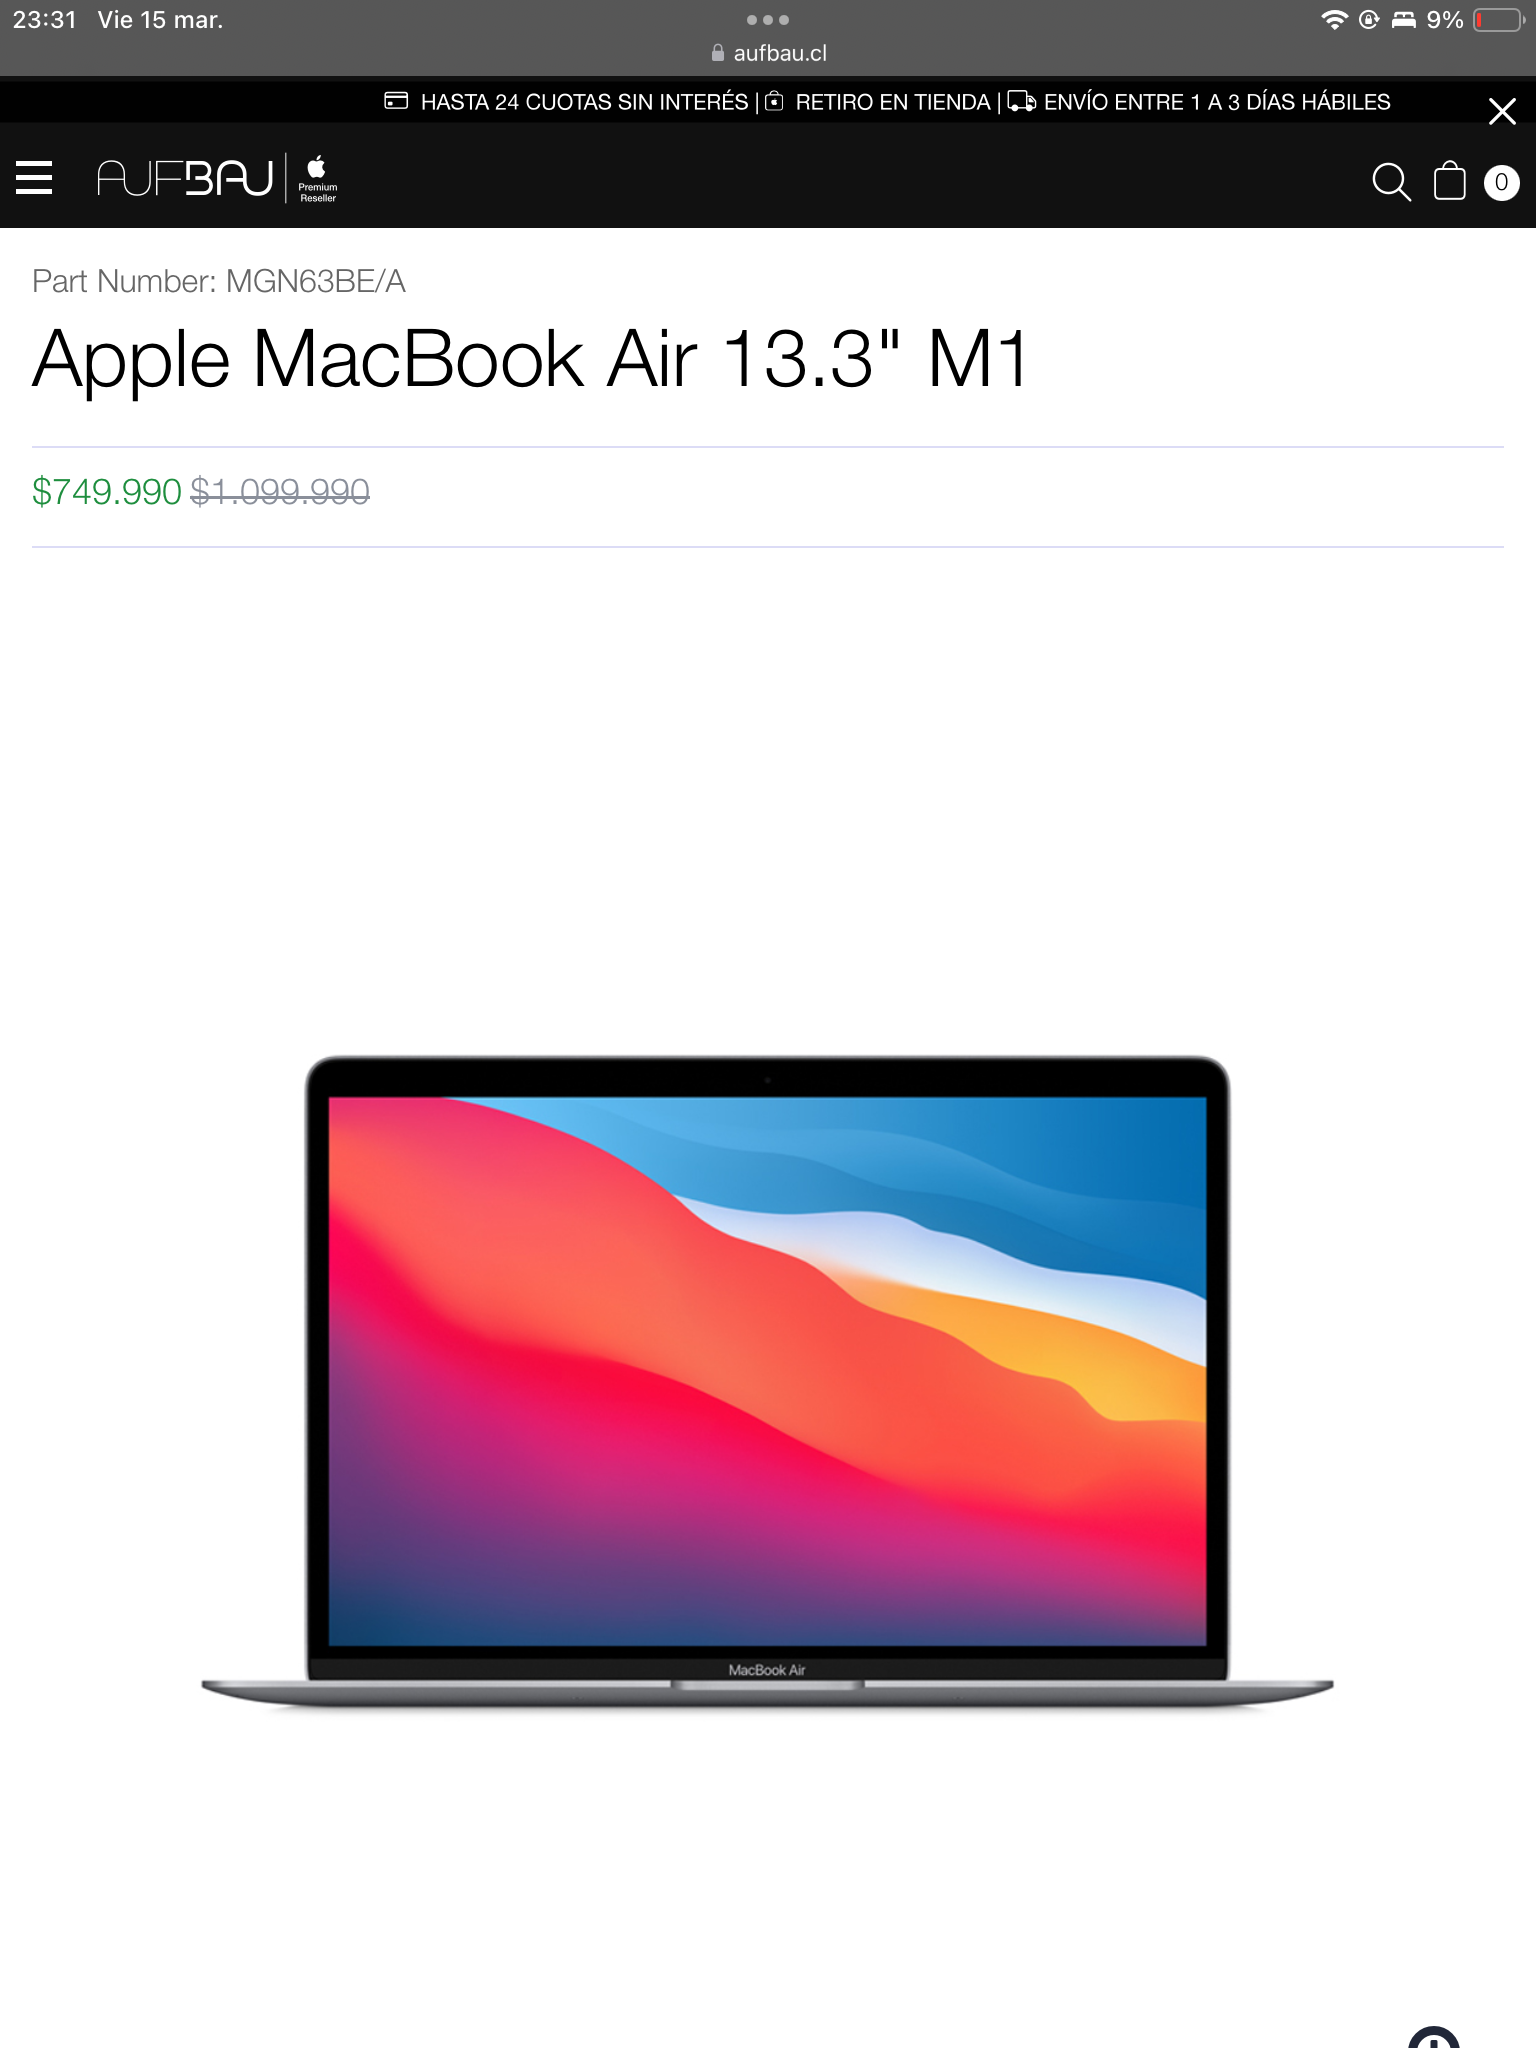 M1 MacBook Air for sale in Aufbau (price in CLP)